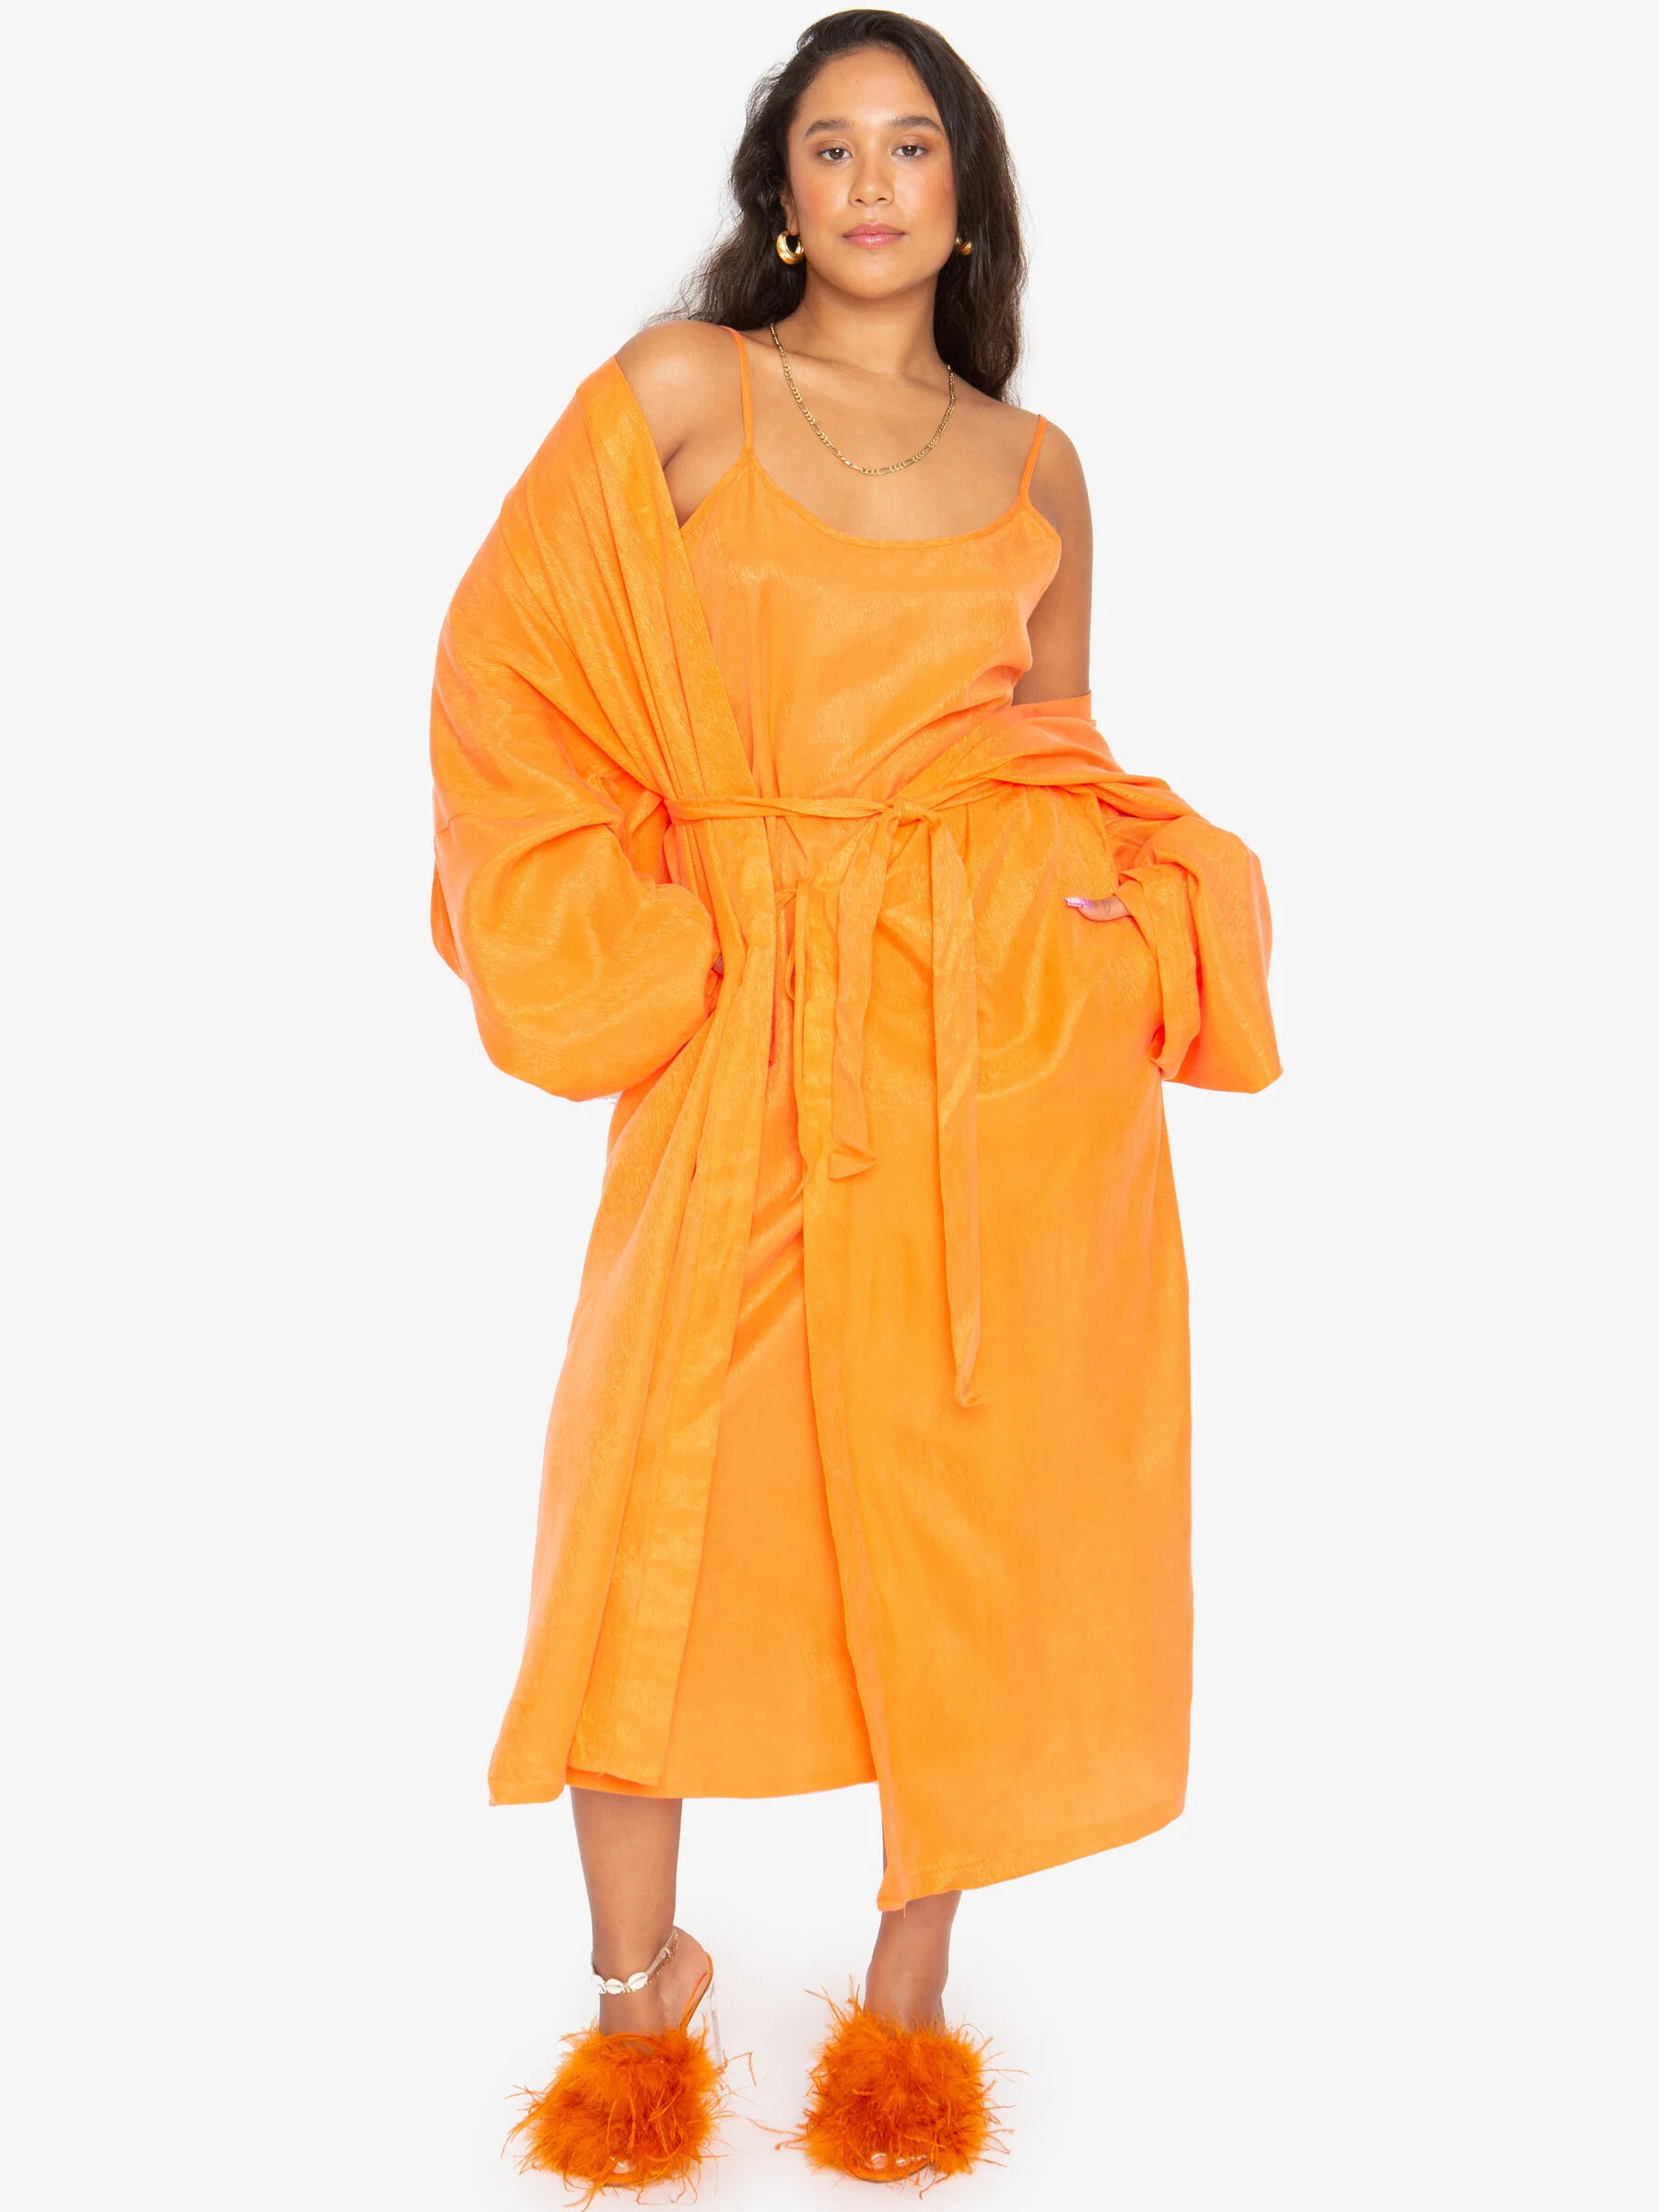 A model wearing Idle's long robe in tangerine.